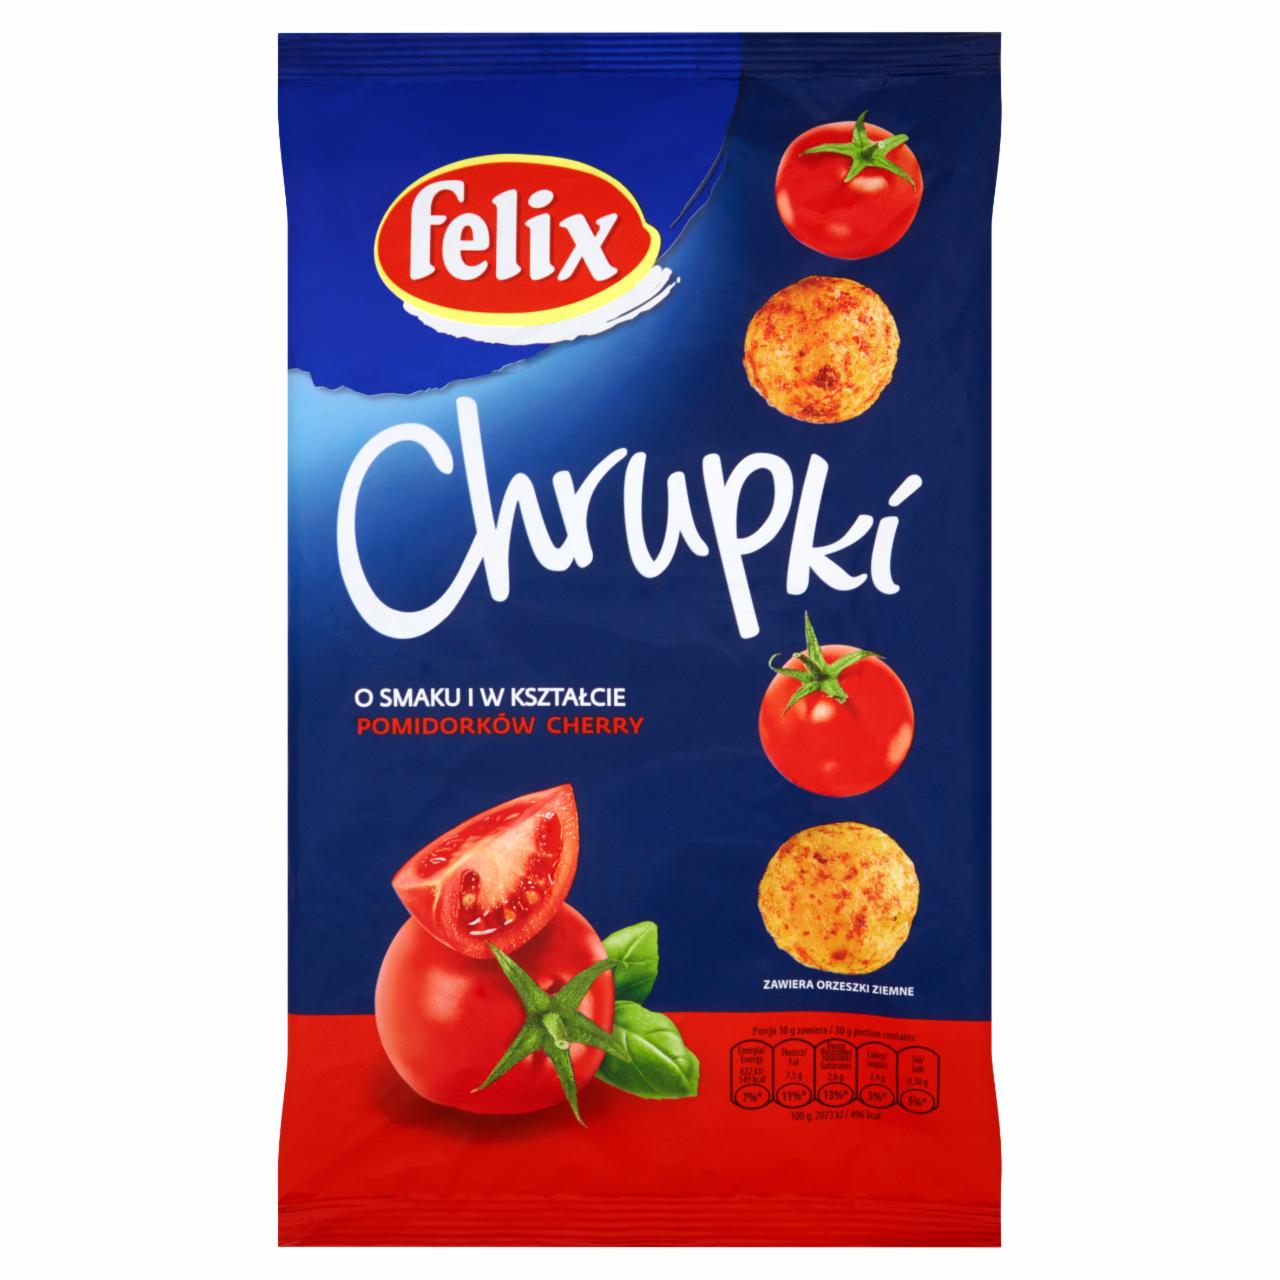 Zdjęcia - Felix Chrupki o smaku i w kształcie pomidorków cherry 100 g